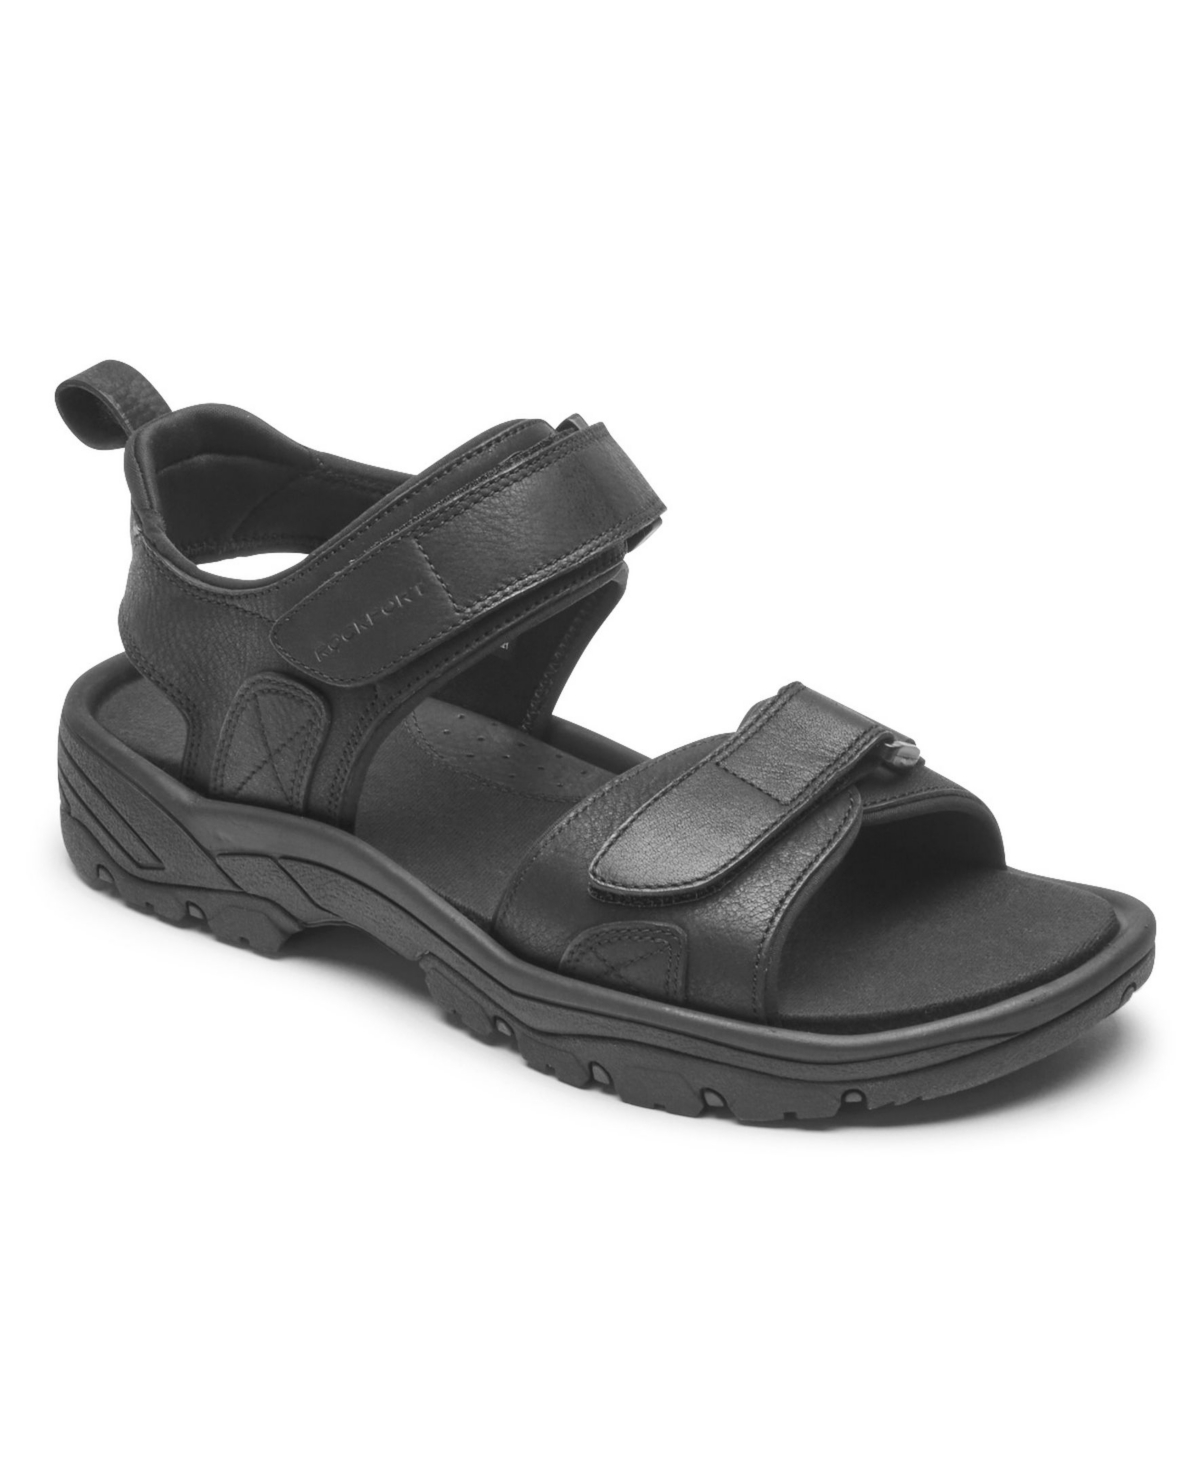 Men's Rocklake Sandals - Black